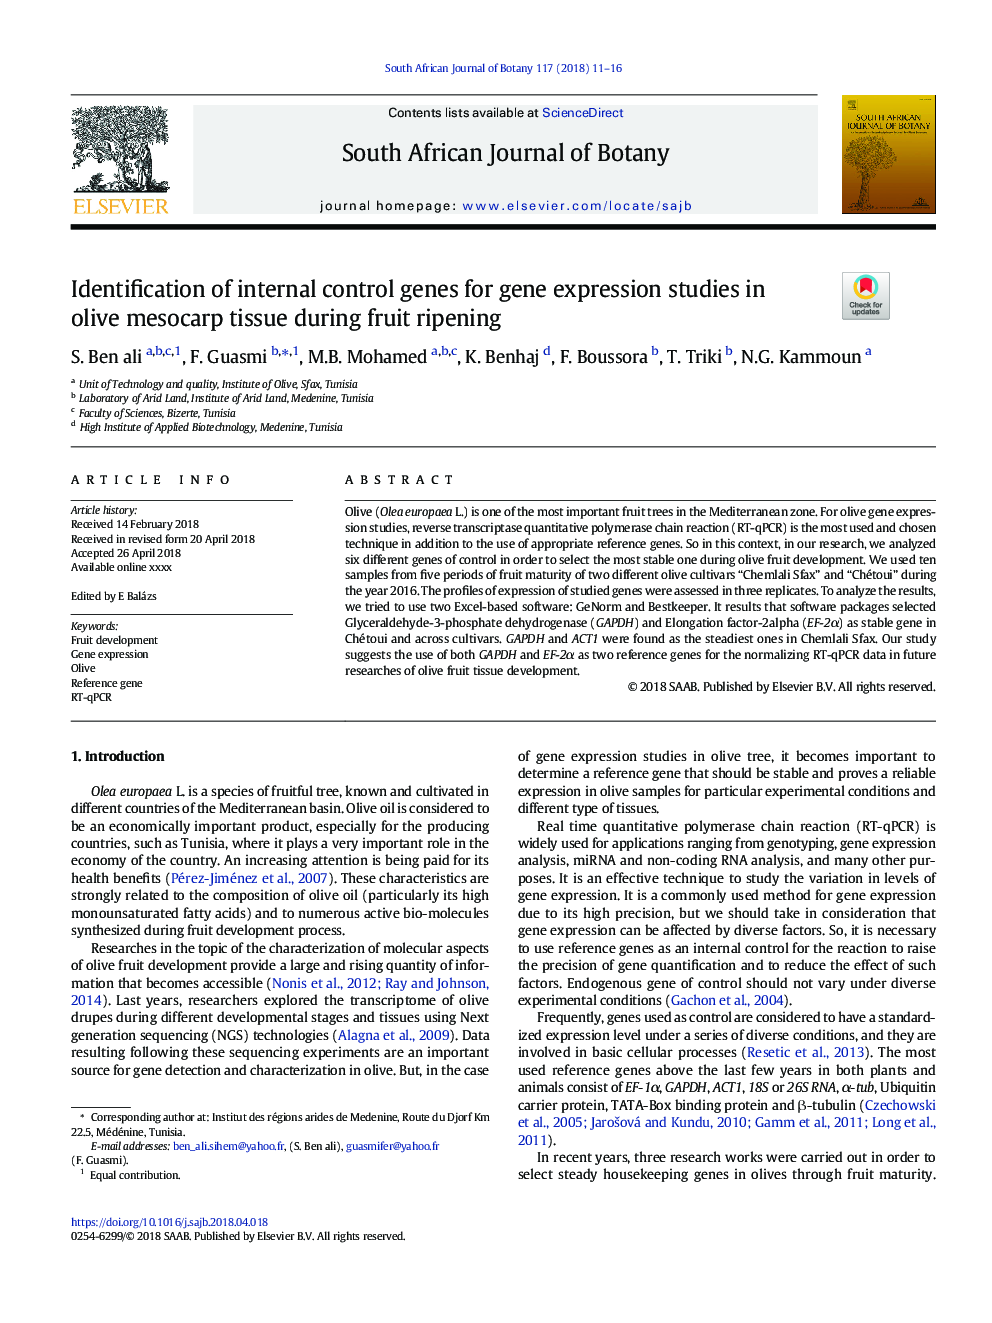 شناسایی ژن های کنترل داخلی برای بررسی بیان ژن در بافت مزوکار زیتون در هنگام رسیدن 